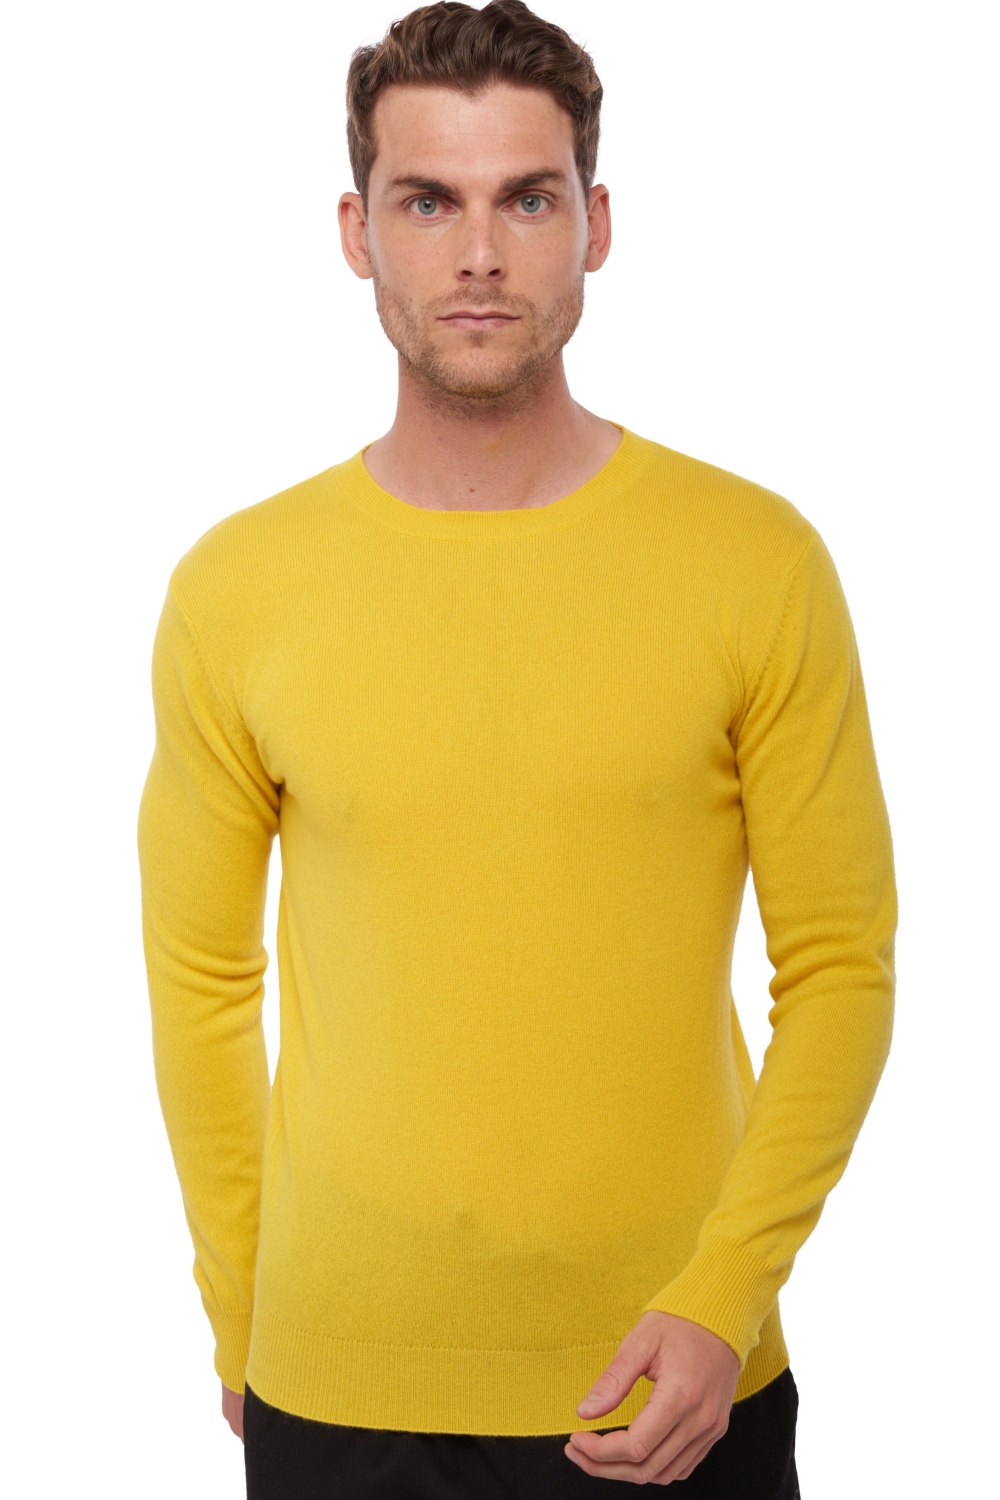 Kasjmier heren kasjmier basic pullovers voor lage prijzen tao first sunny yellow xl